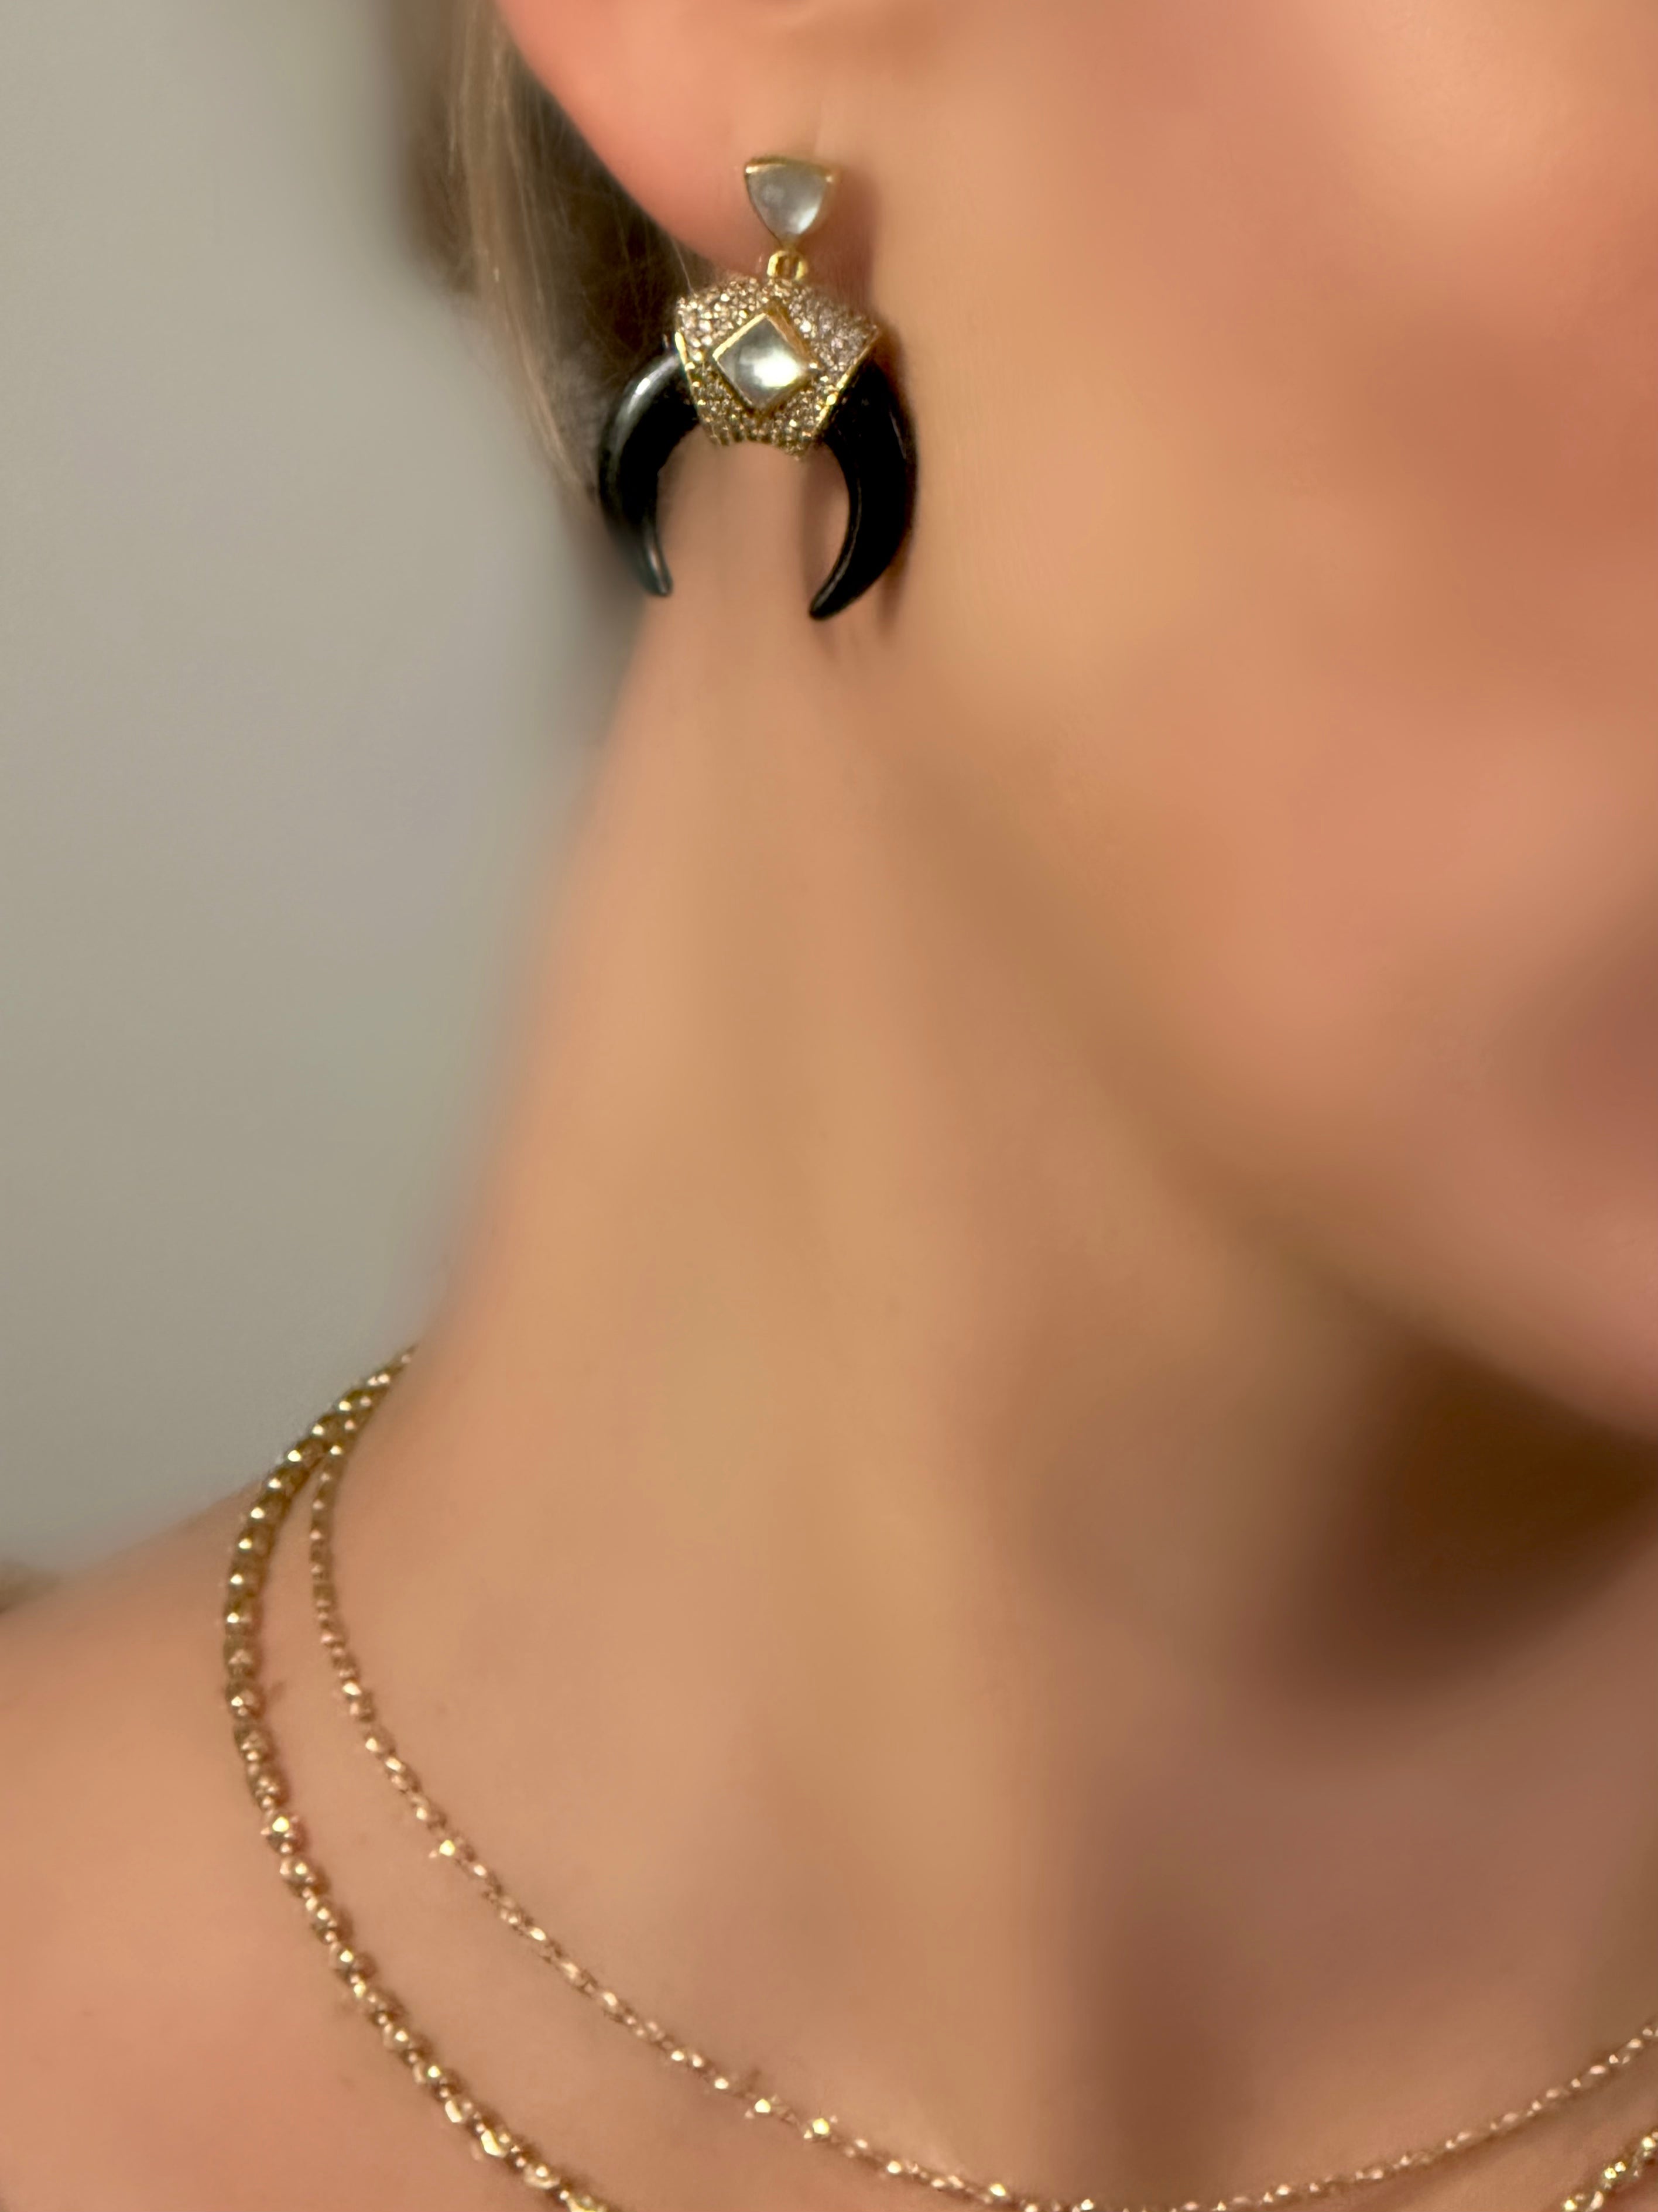 Le Marshand®  -  Joyería en plata 925, chapado en Oro 24K - Pendientes Cuerno Stones (Ónix) - Diseños propios - Brazaletes, pulseras, collares y pendientes - Joyería online - Mallorca